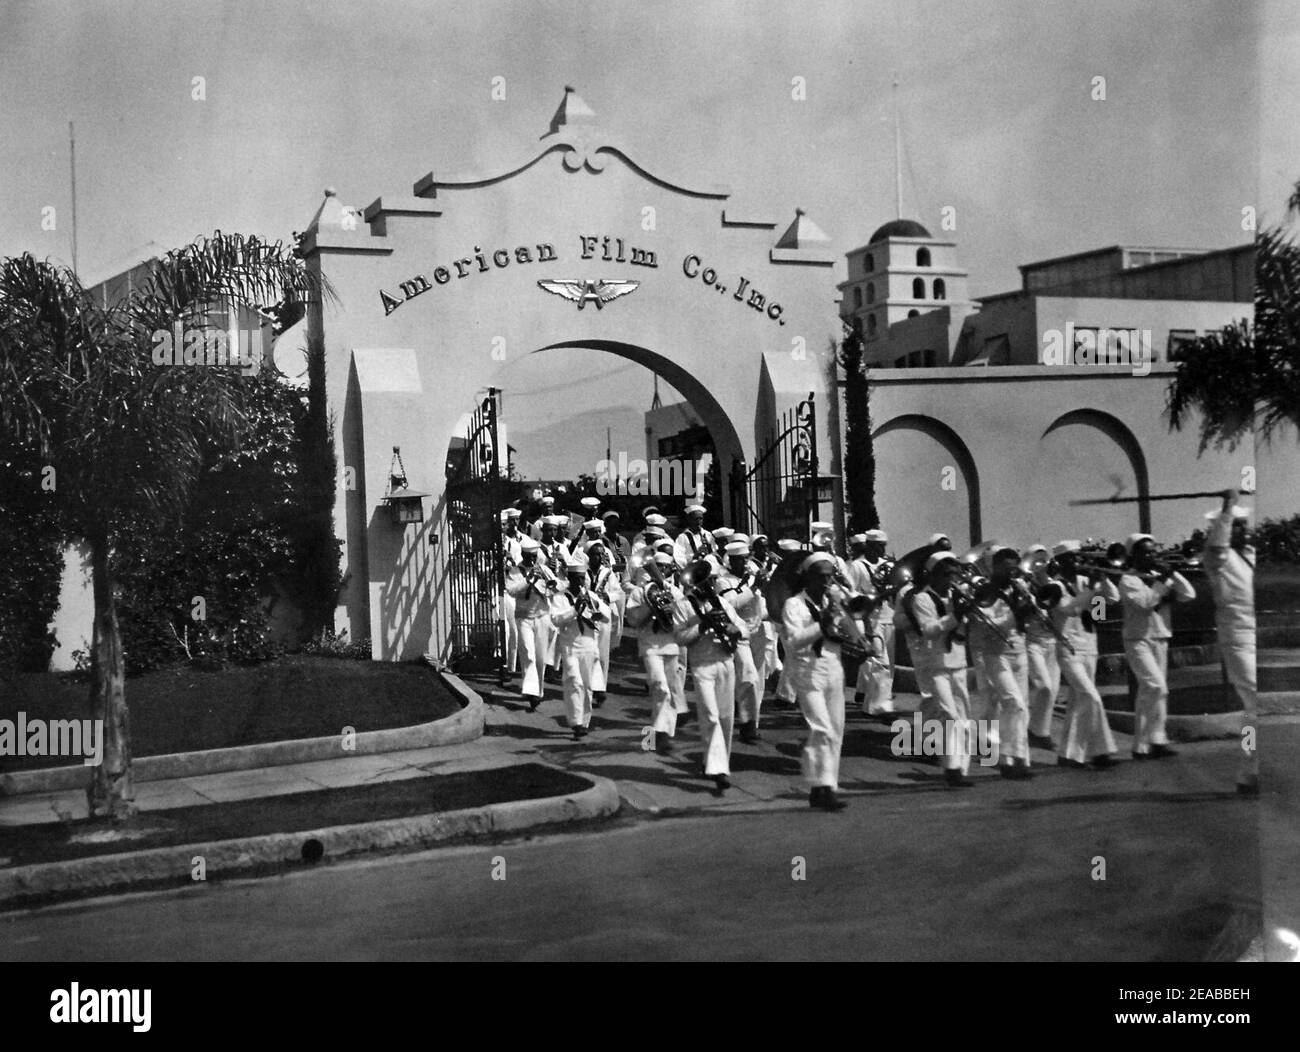 Navy Recruiting Band at American Film Company, Santa Barbara, California, June 4-5, 1919 (27696985226). Stock Photo